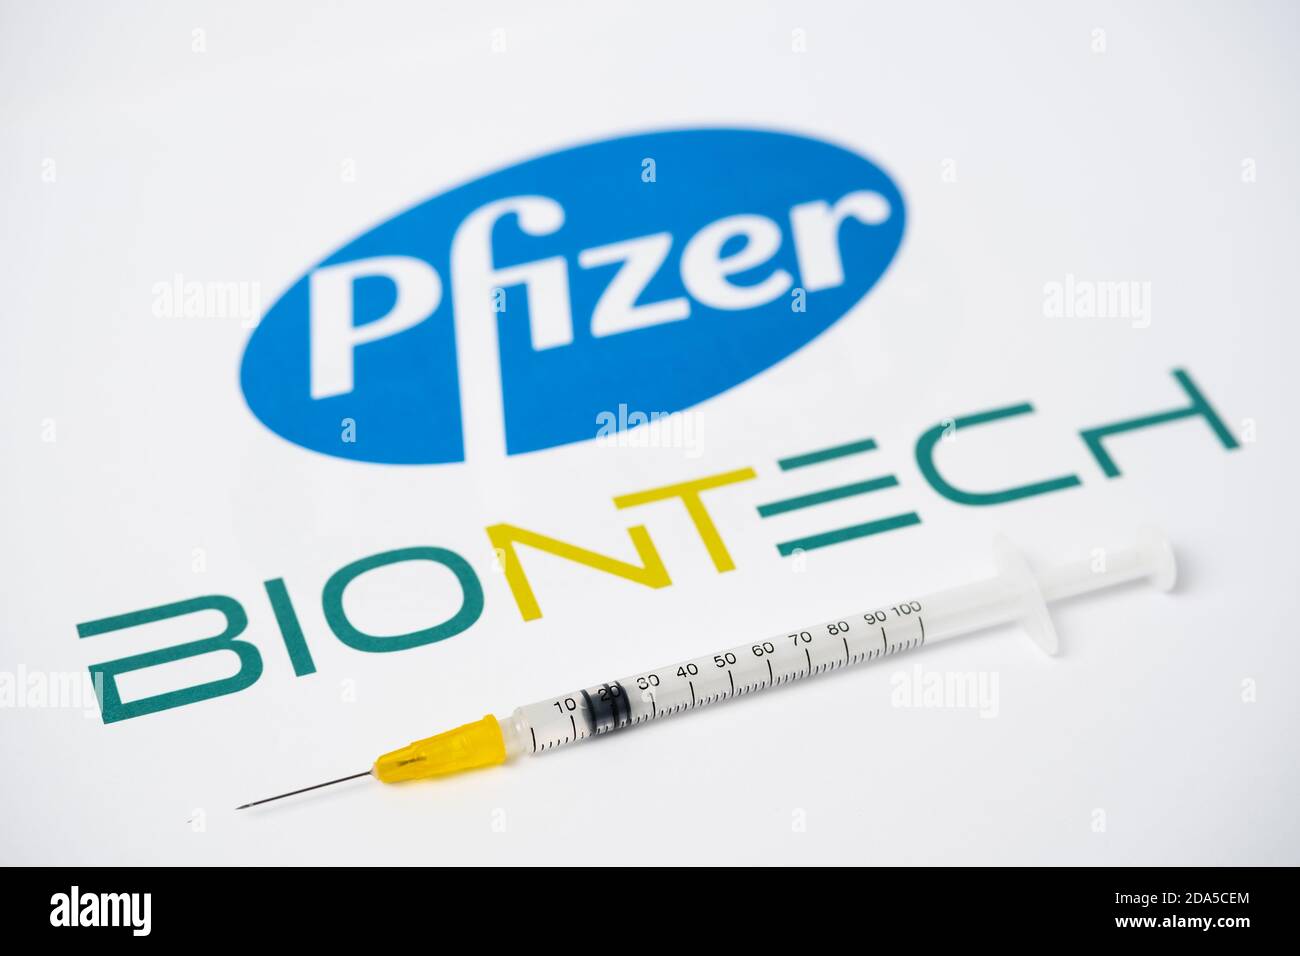 Stafford / Regno Unito - 9 novembre 2020: Concetto di vaccino Pfizer BioNTech Covid-19. Siringa bilanciata sulla punta delle dita e logo aziendali sfocati sulla stessa Foto Stock